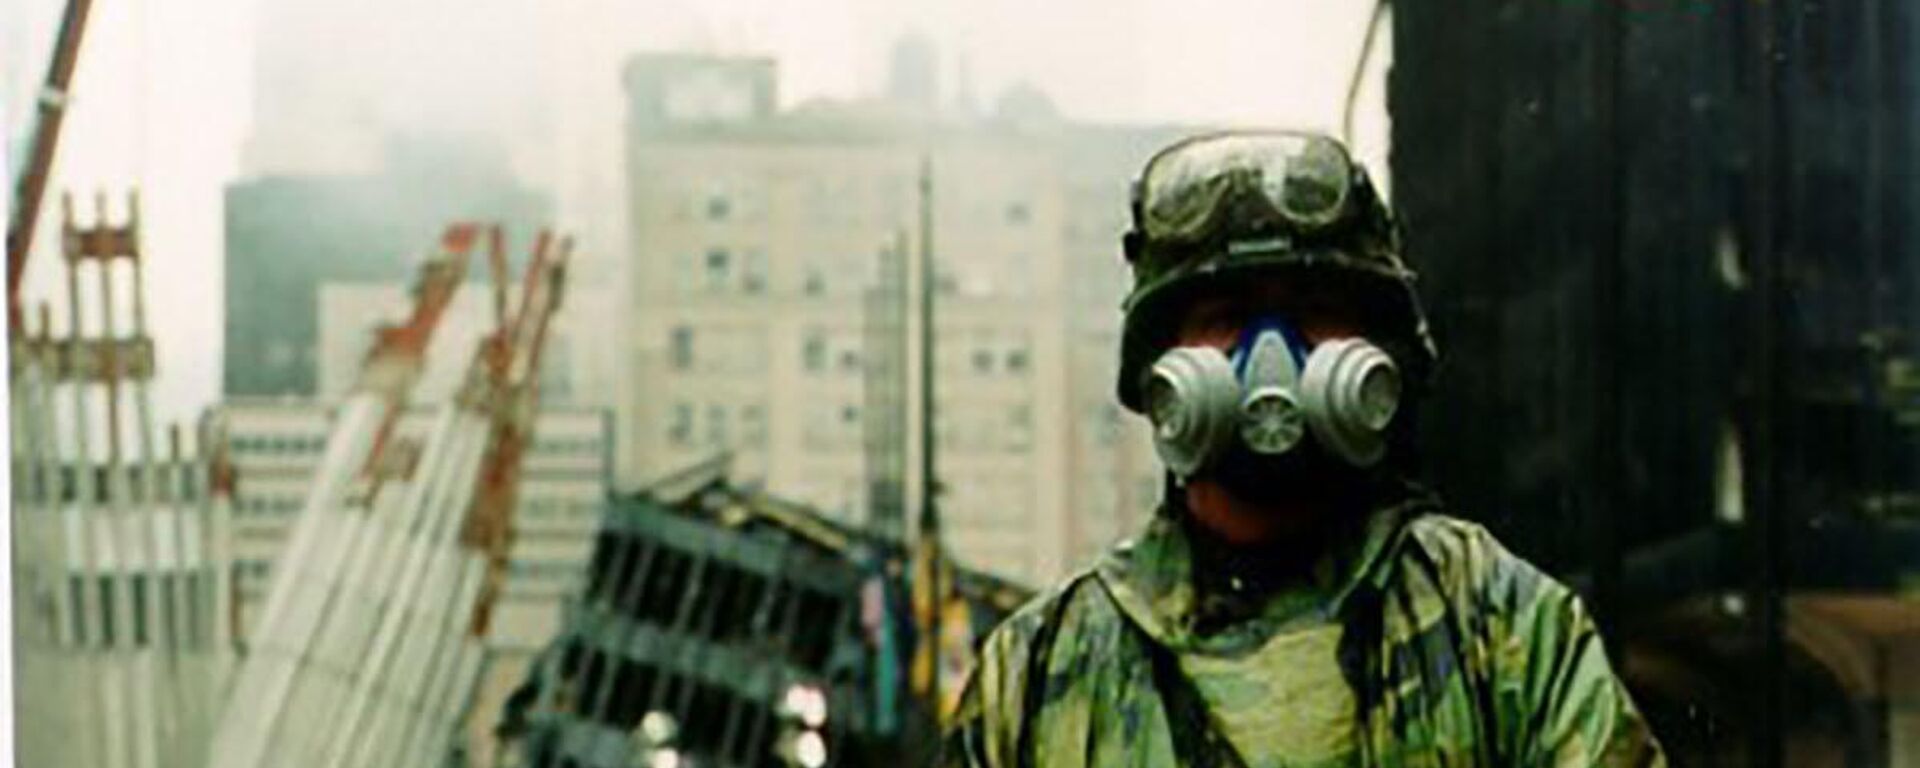 Солдат Национальной гвардии армии Нью-Йорка охраняет контрольно-пропускной пункт во Всемирном торговом центре в Нью-Йорке 14 сентября 2001 года - Sputnik Mundo, 1920, 11.09.2023